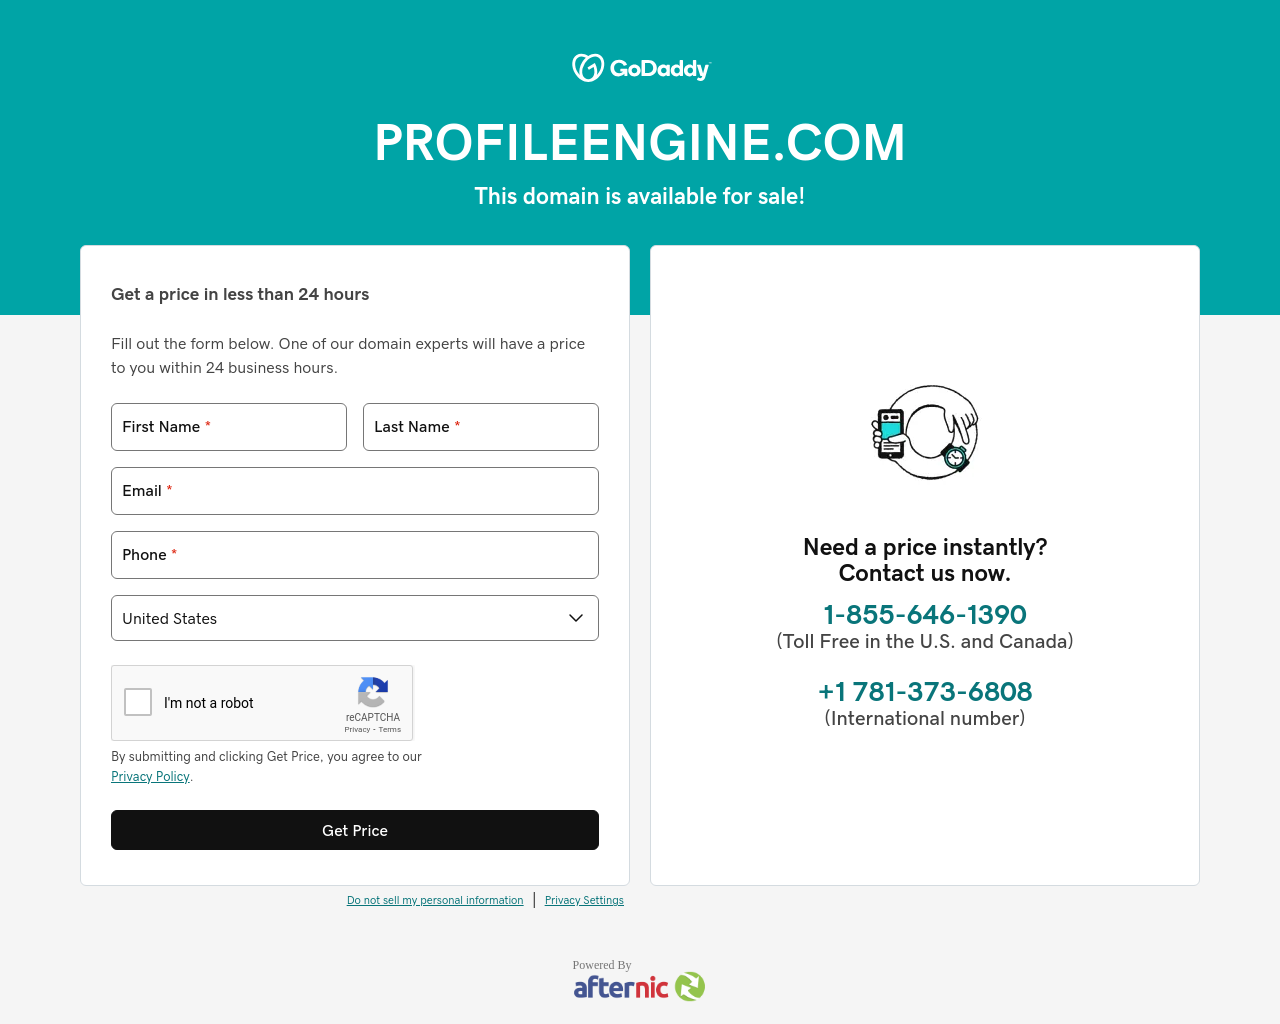 profileengine.com